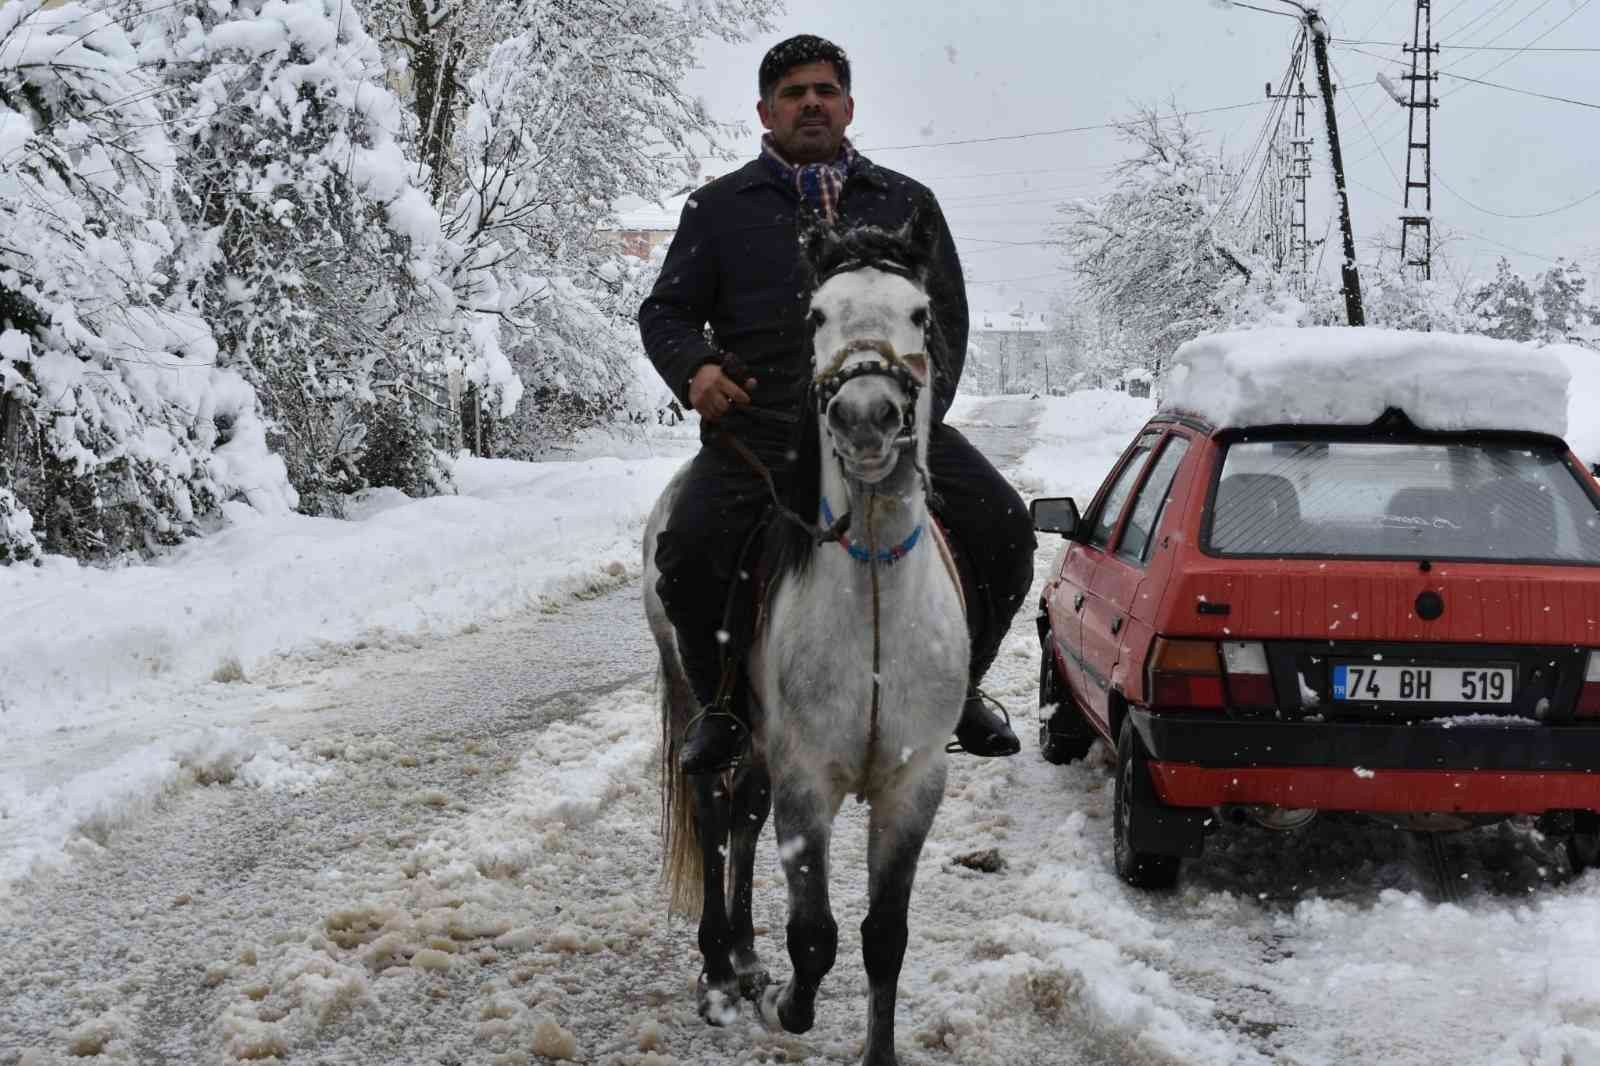 Kış esaretinde ulaşımını atı ile sağlıyor #bartin